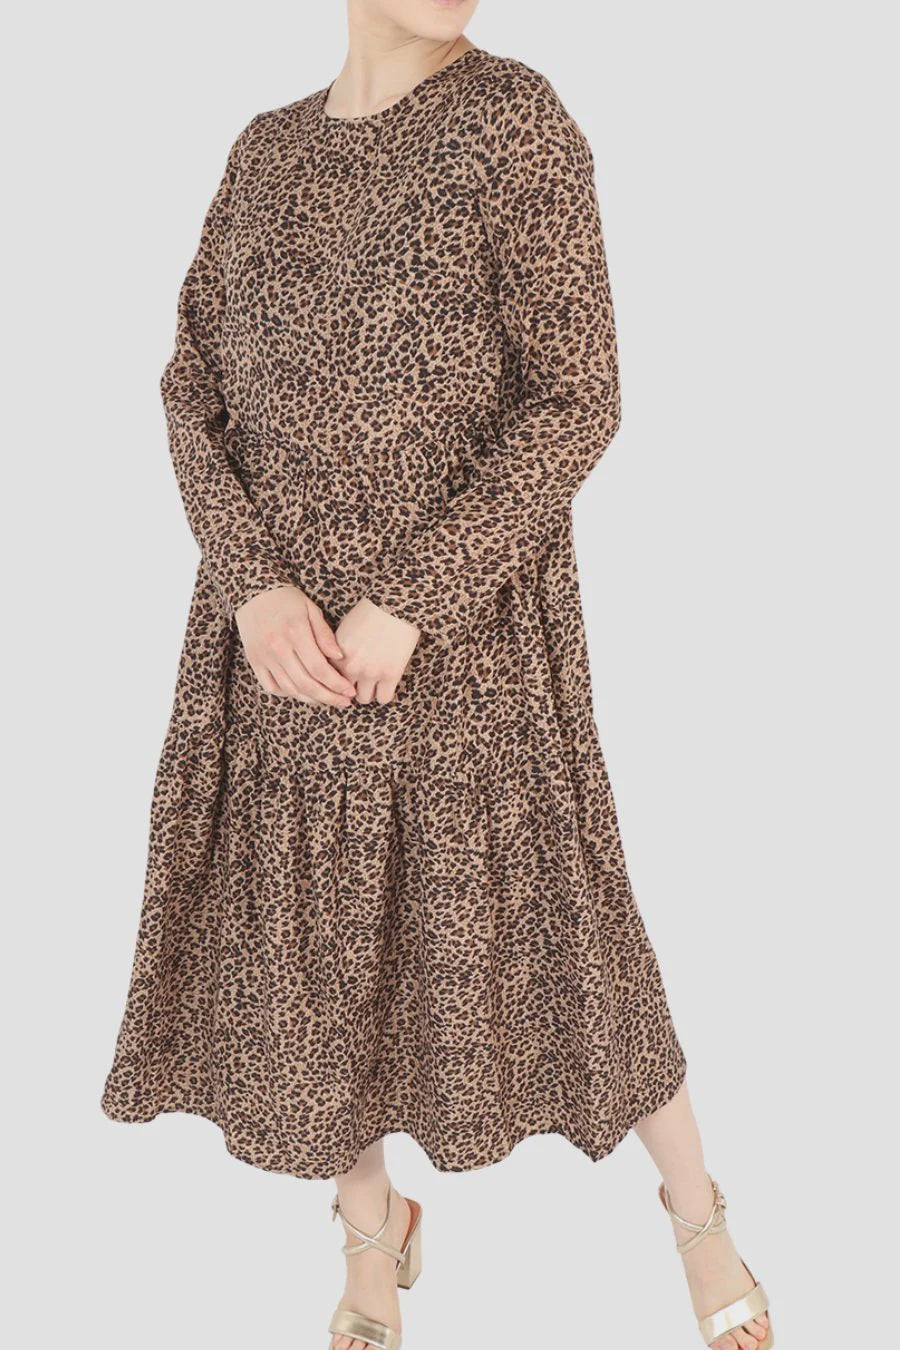 Small Leopard Print Tiered Dress - Neutral